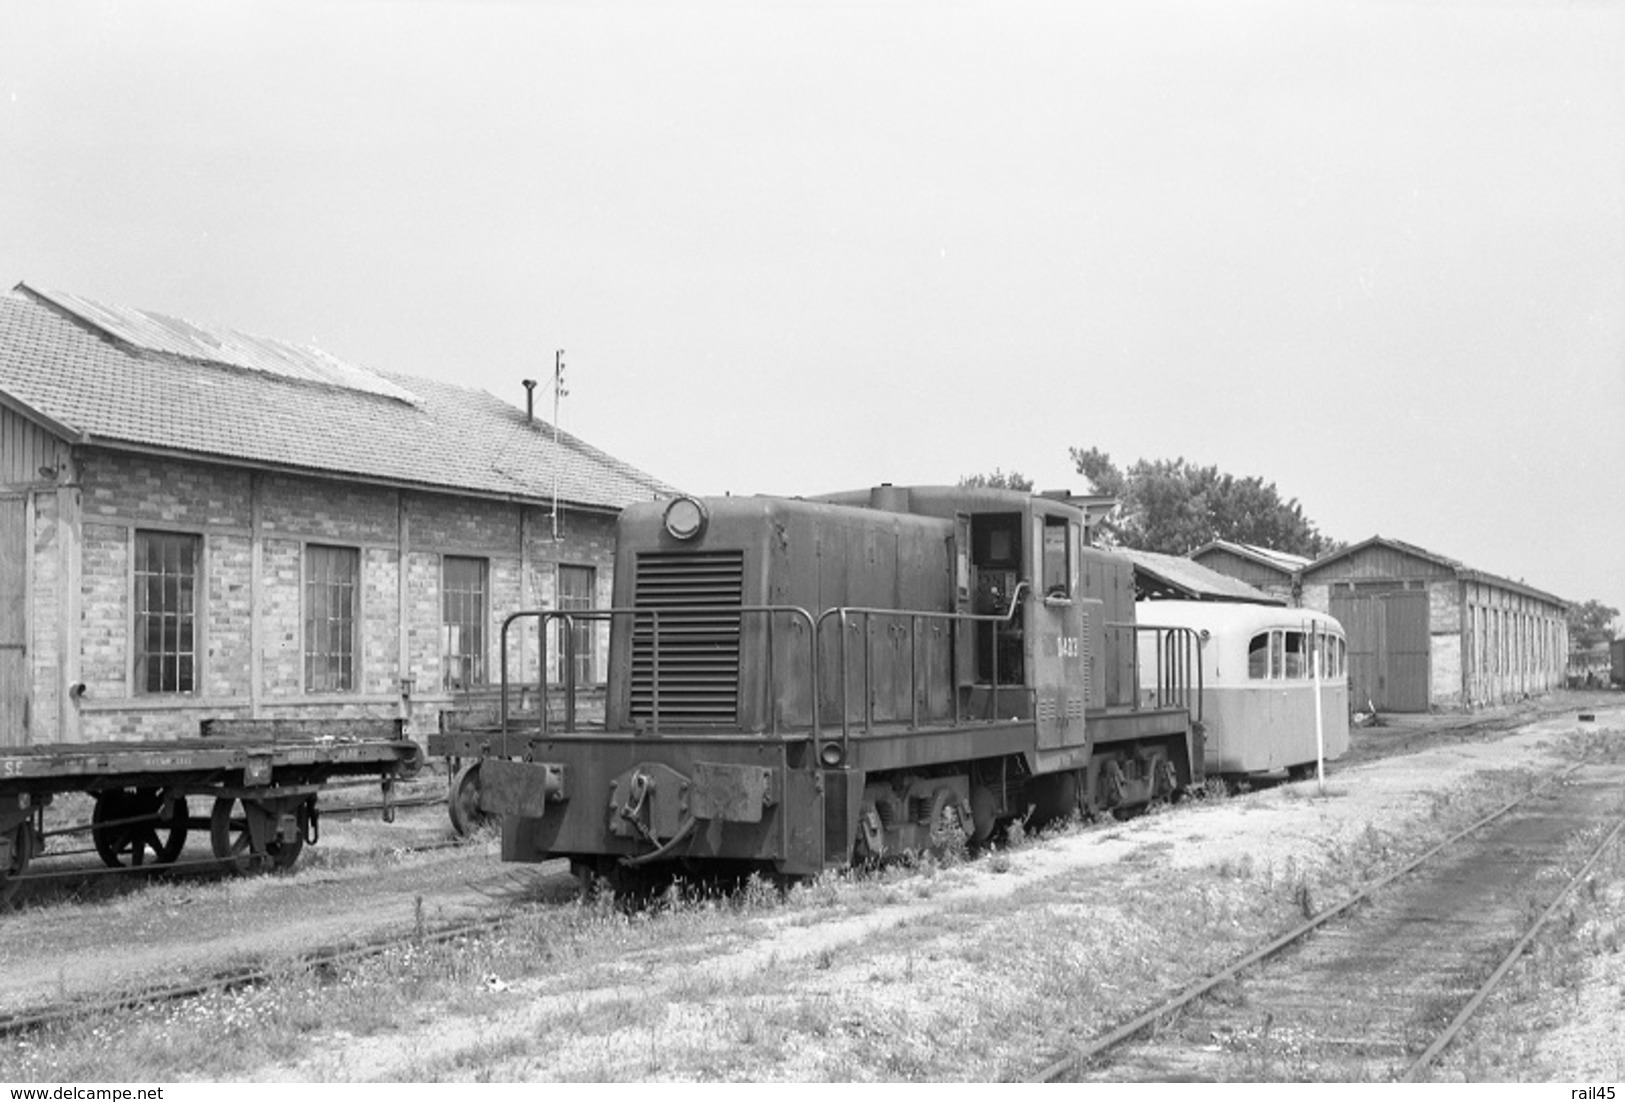 Lacanau-Médoc. Economiques De Gironde. Locomotive General Electric D-4031. Cliché Jacques Bazin. 05-07-1953 - Eisenbahnen